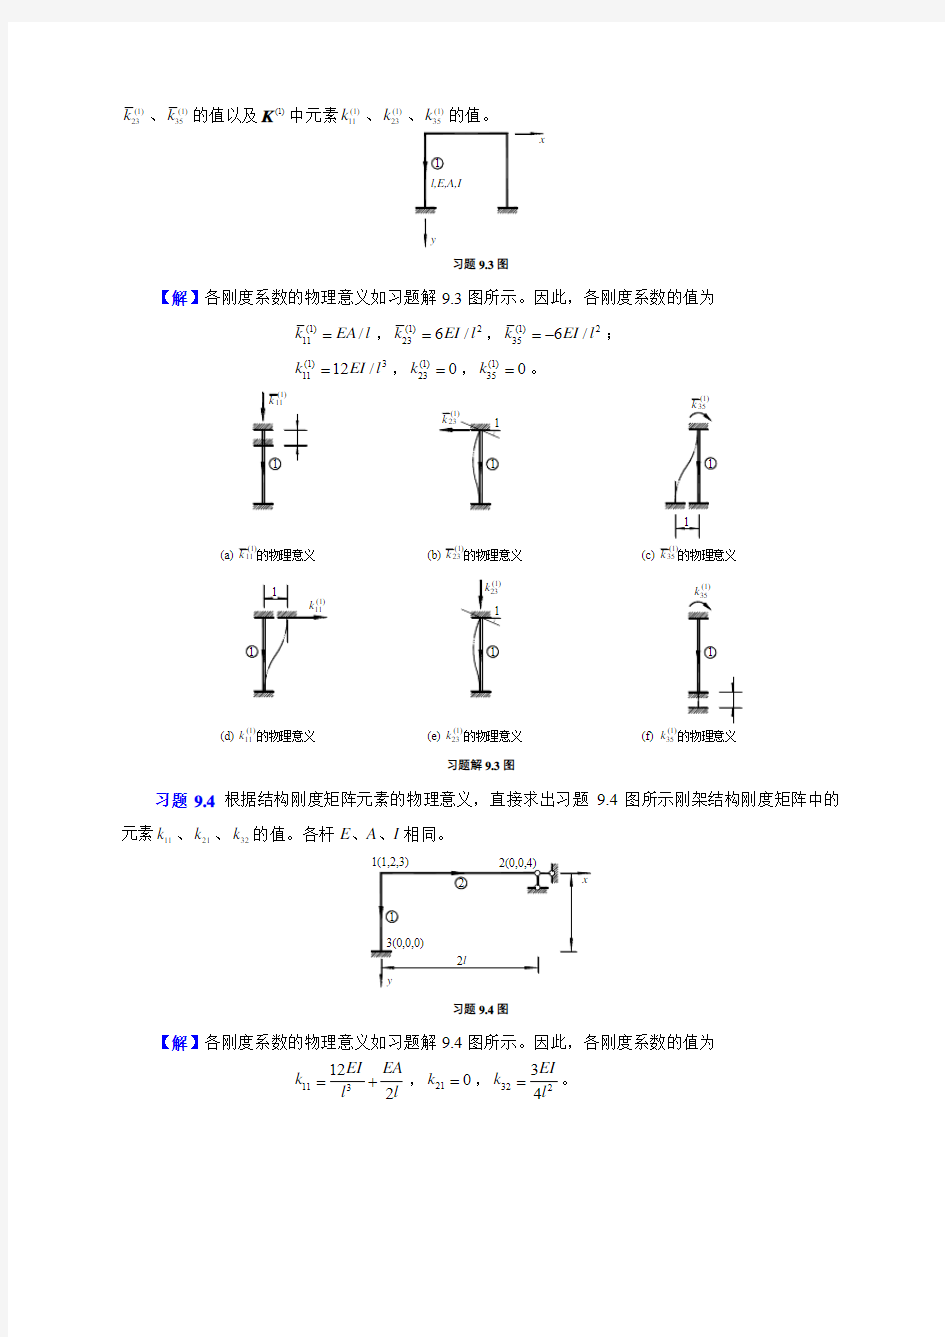 9矩阵位移法习题解答,重庆大学,文国治版教材课后答案.